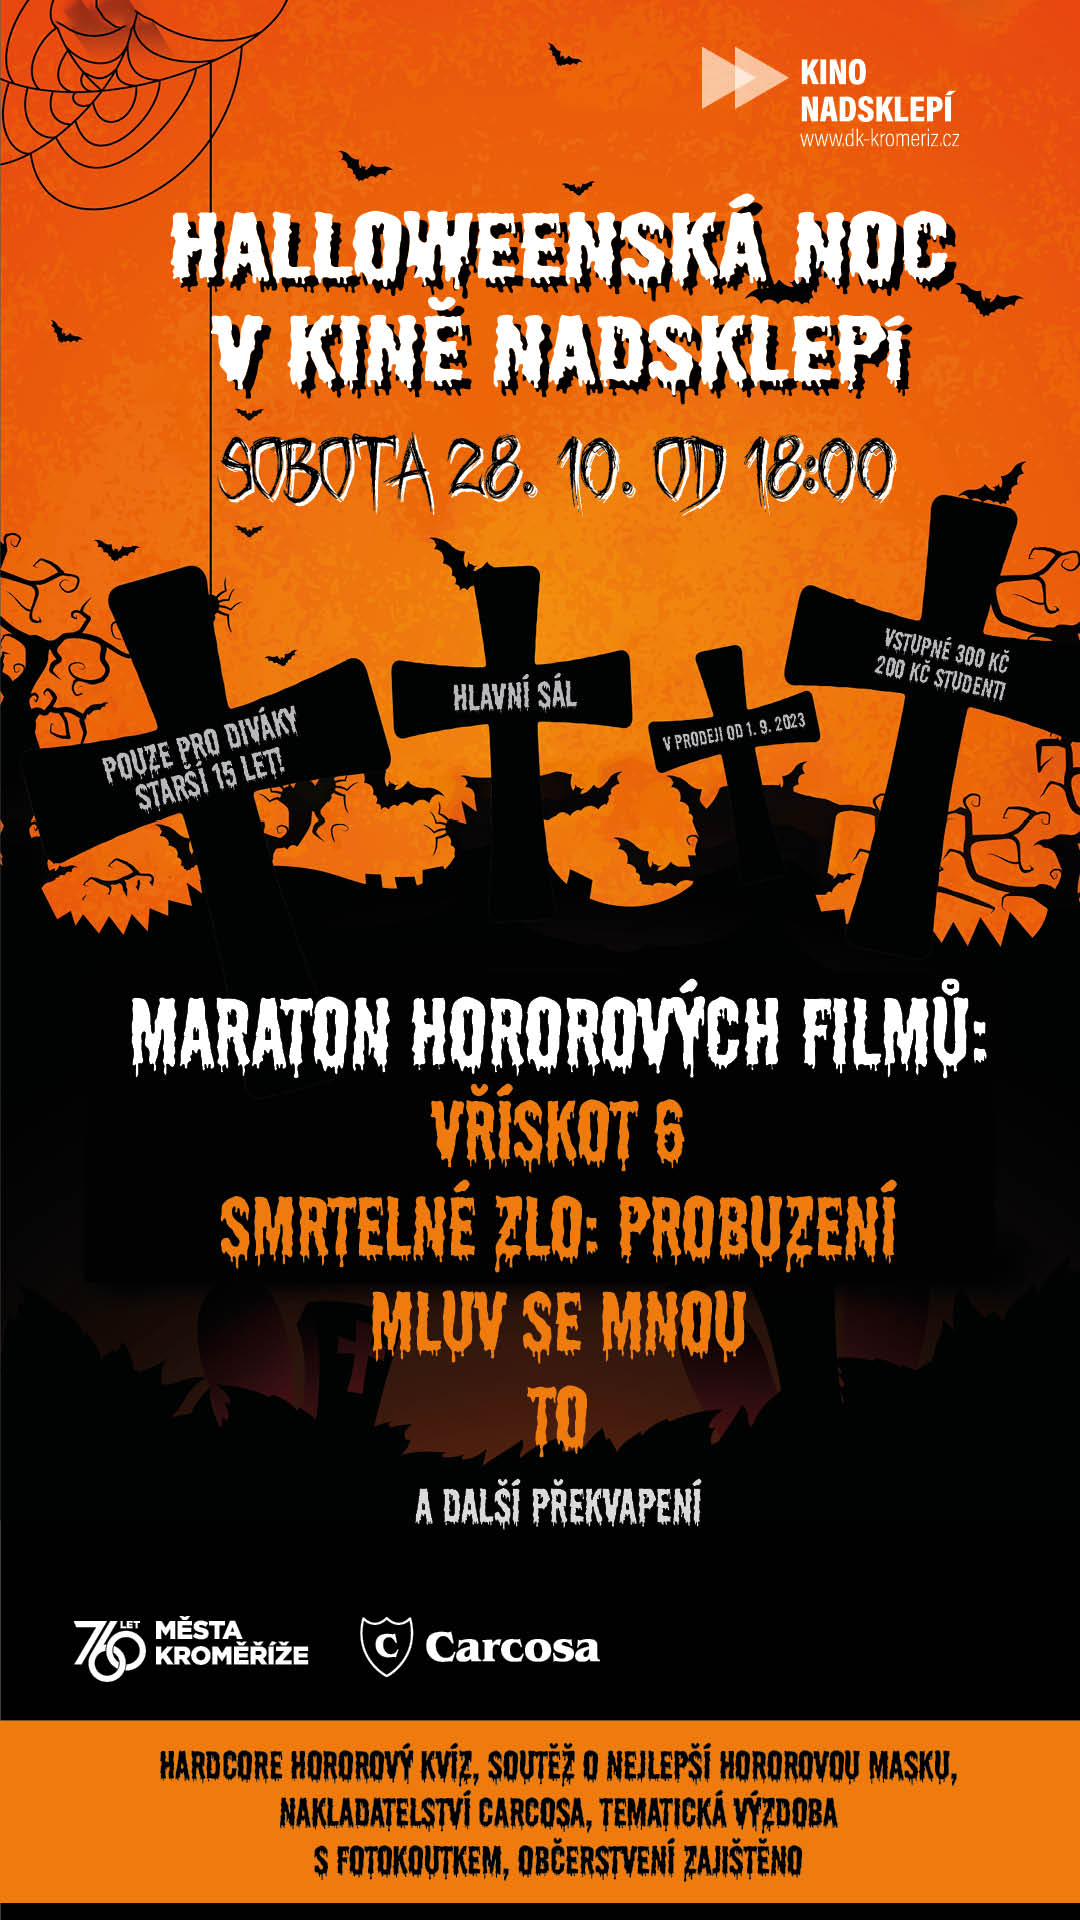 Halloweenská noc v kroměřižském kině Nadsklepí